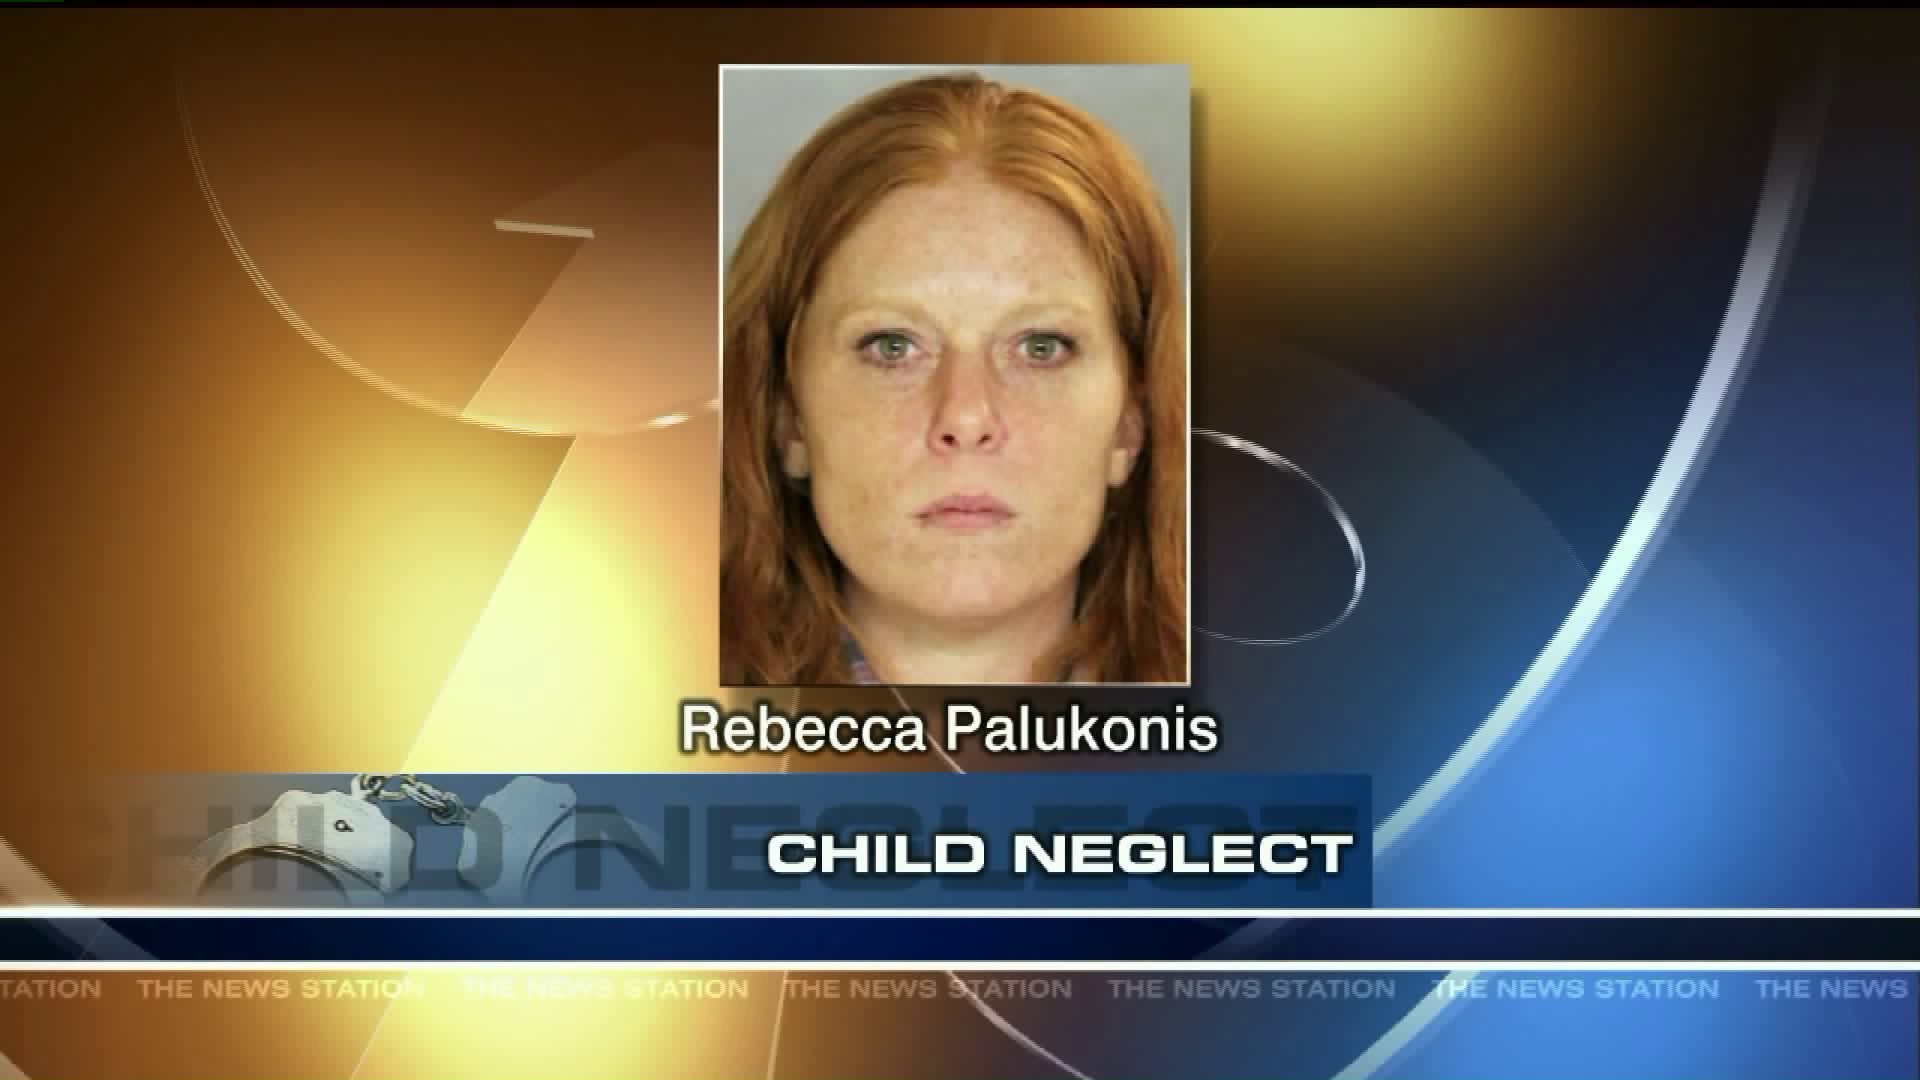 Child Neglect in Scranton Ashley Palukonis